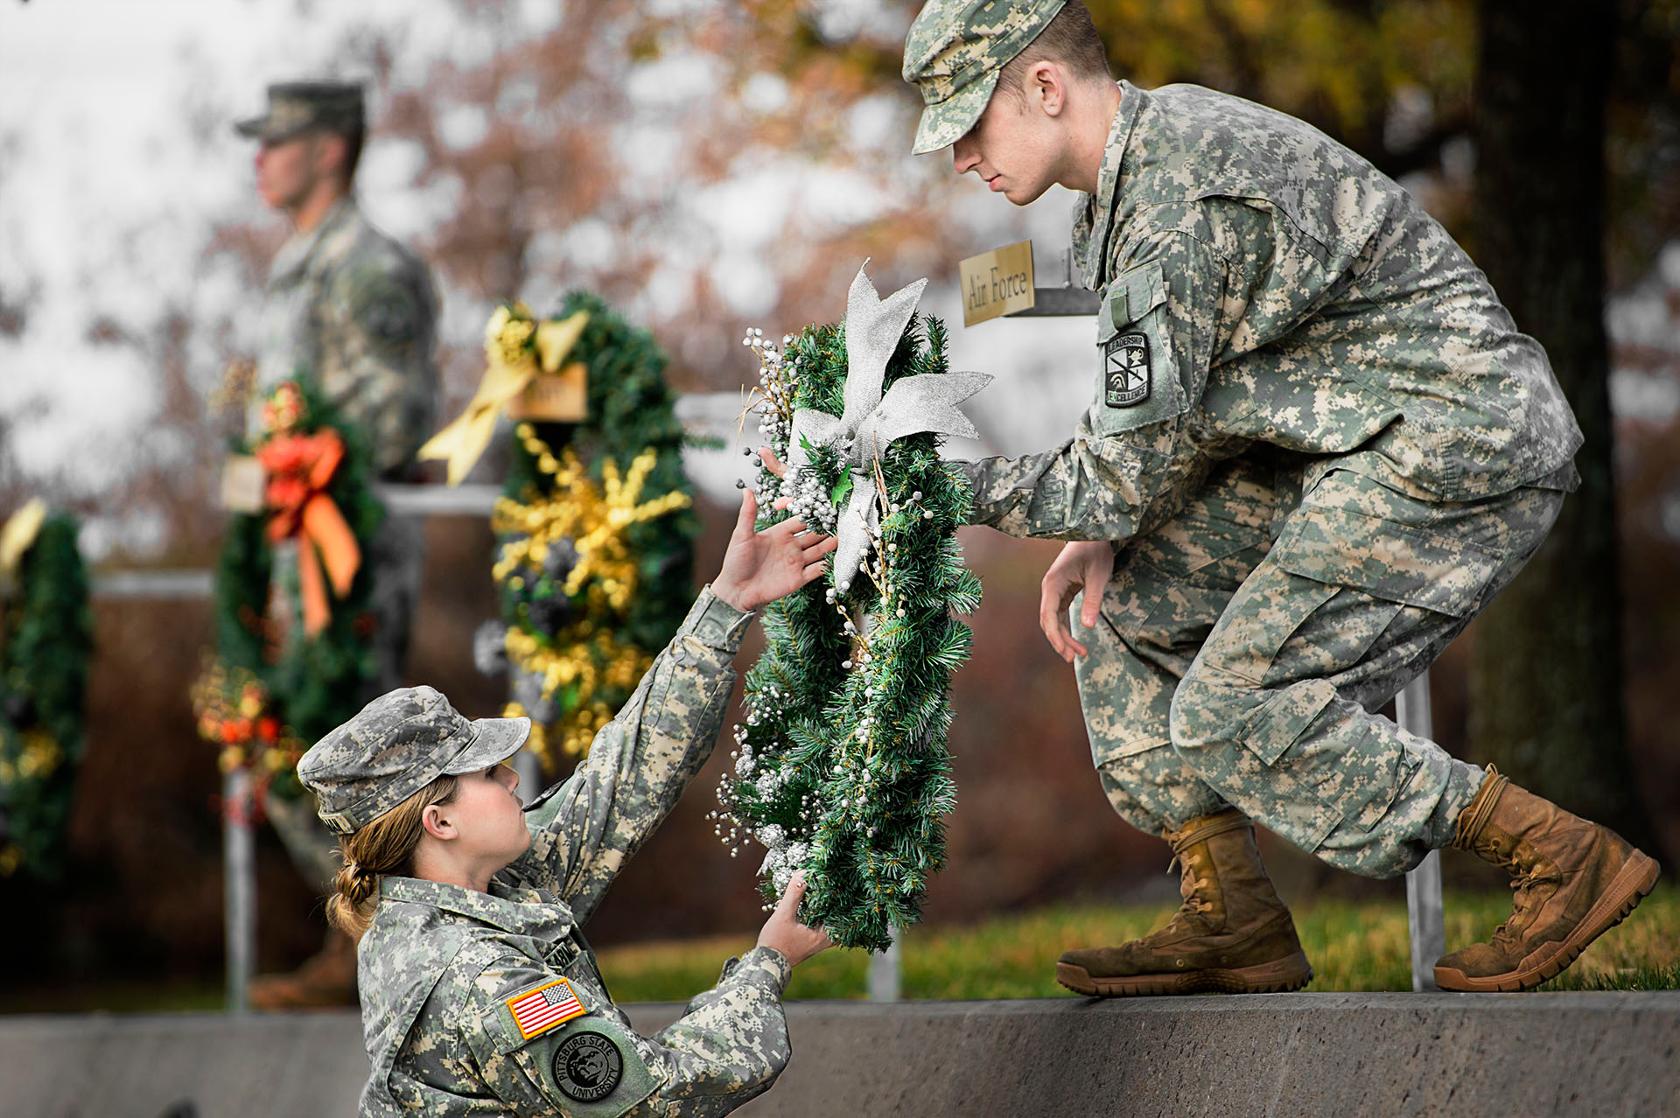 Wreath ceremony